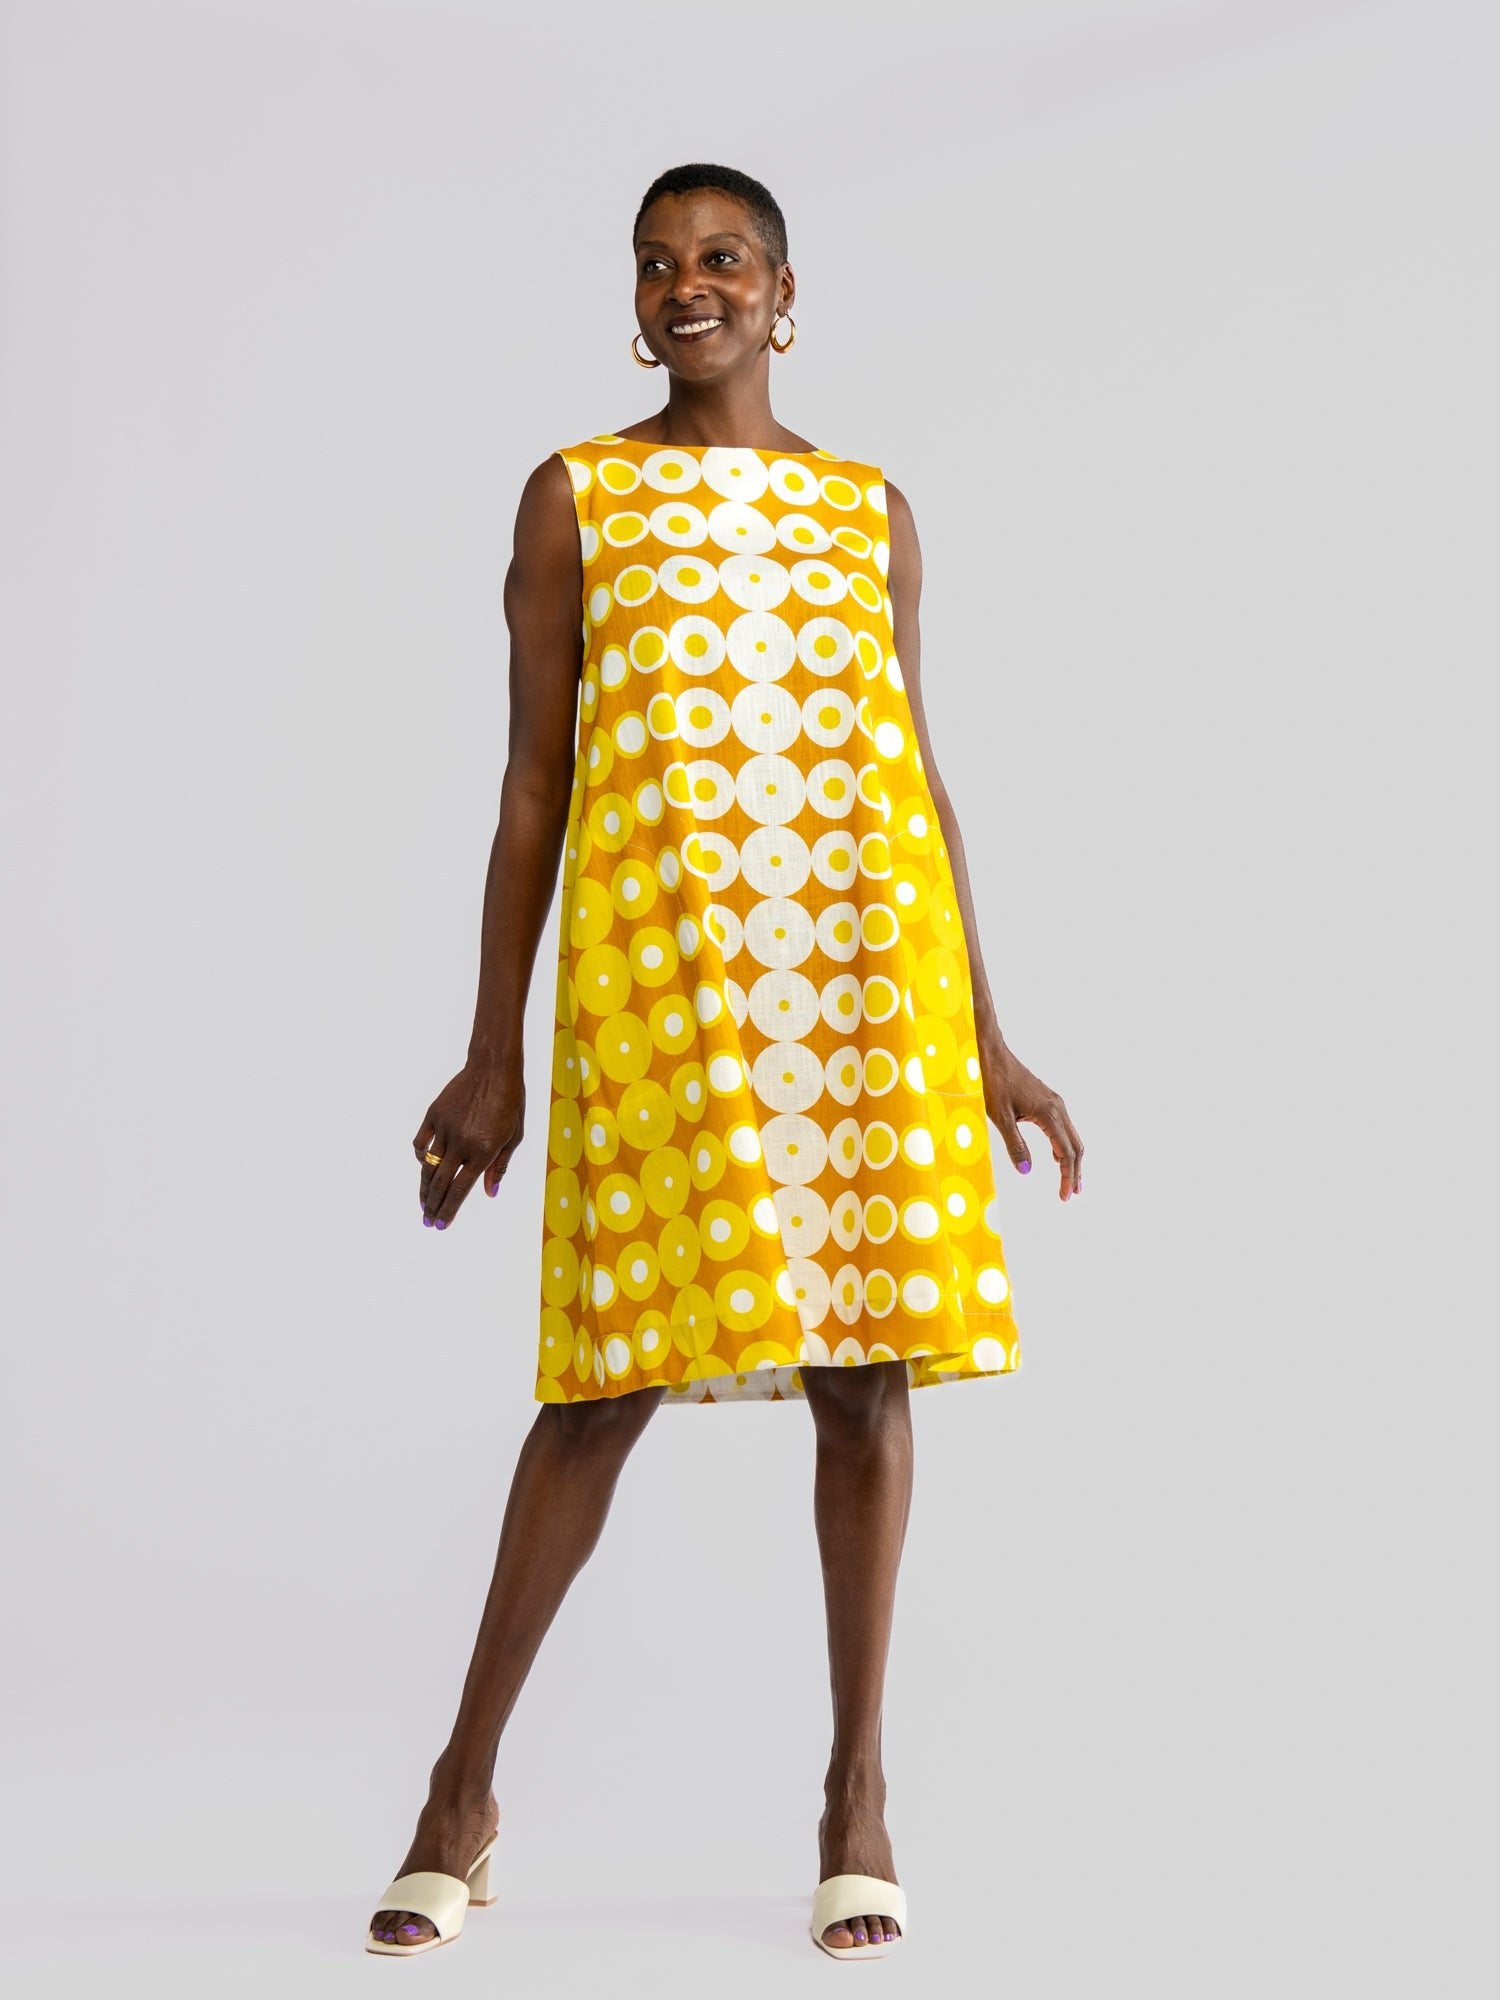 JUNIPER dress Pacifica Yellow - Lesley Evers-Best Seller-cotton dress-Dress